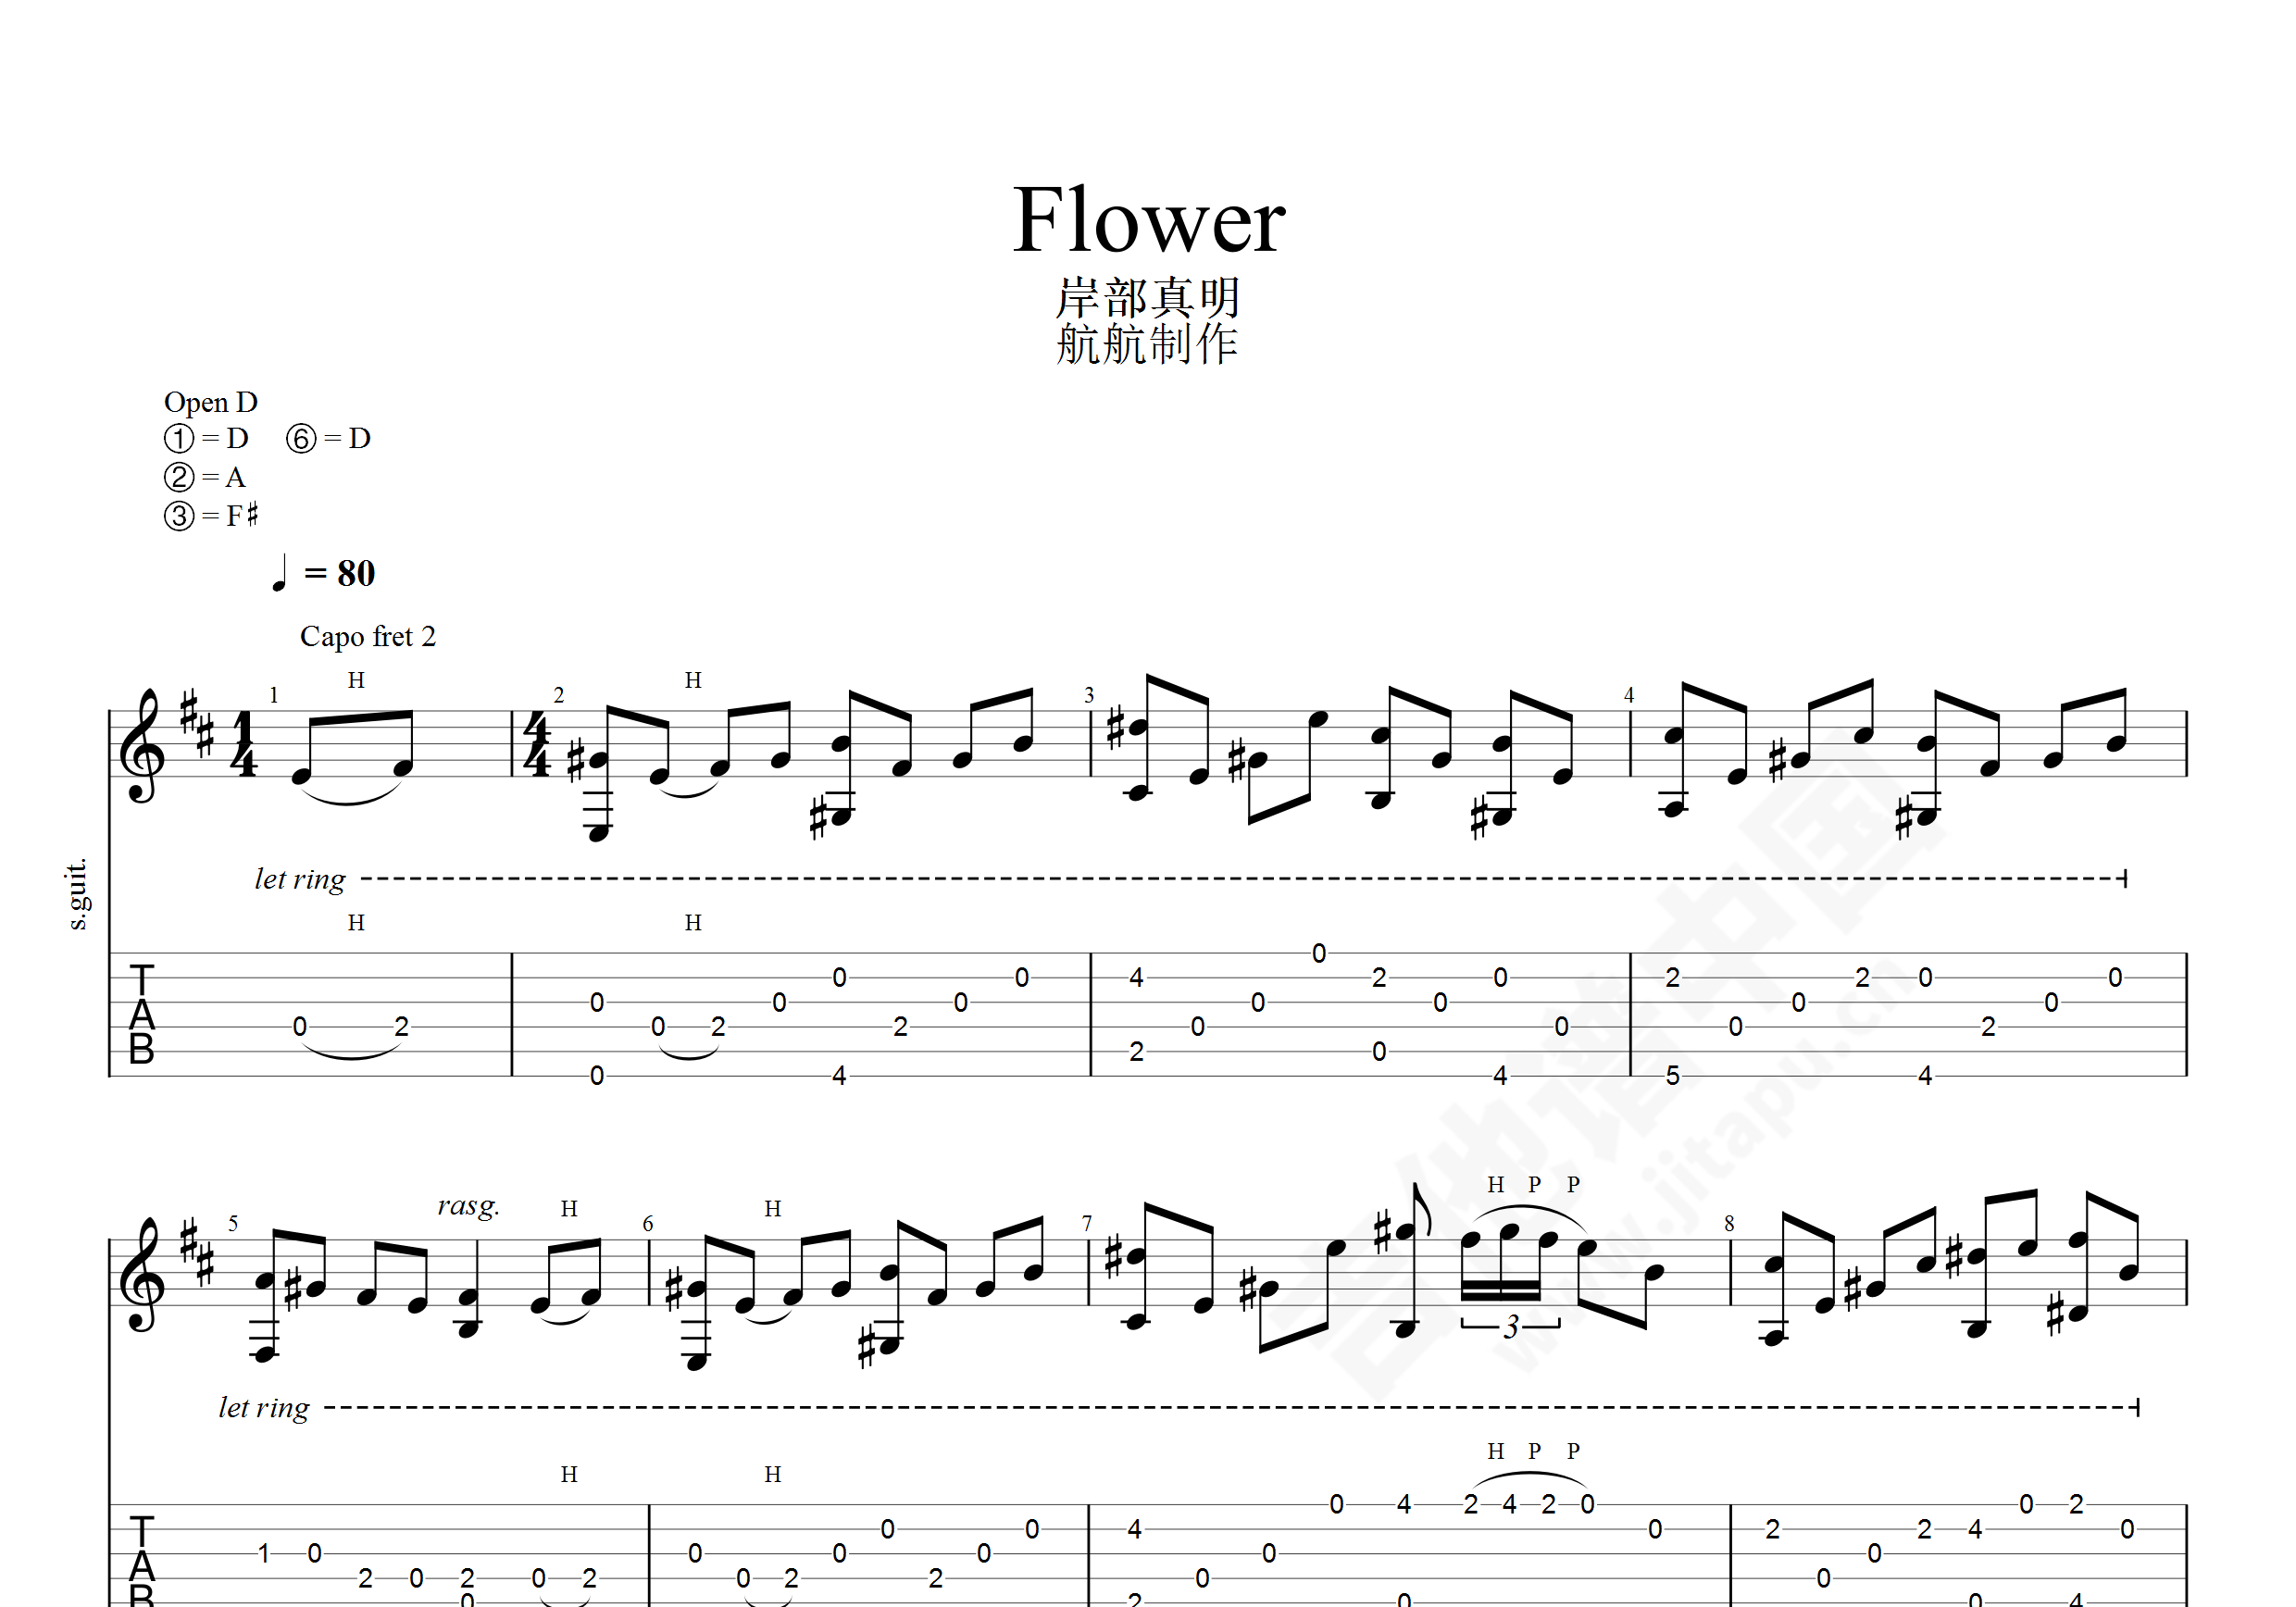 岸部真明 - Flower [指弹] 吉他谱